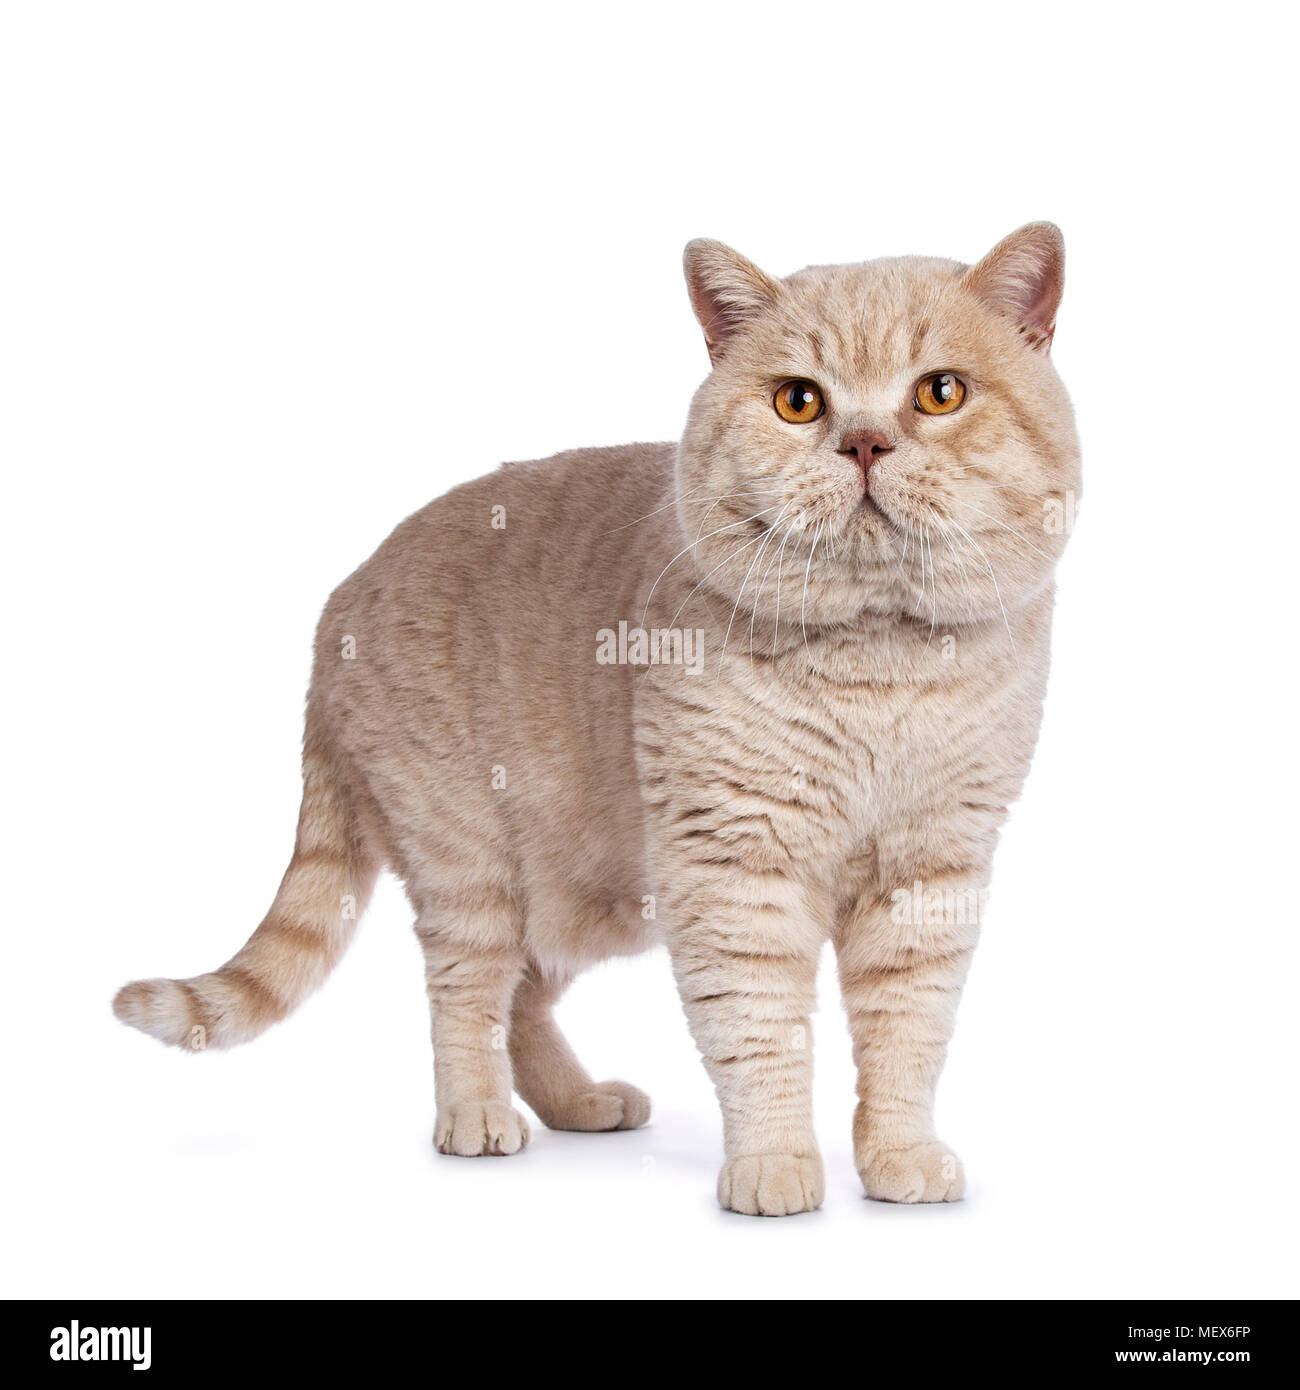 Creme impressionnant British Shorthair mâles adultes cat article isolé sur fond blanc Banque D'Images